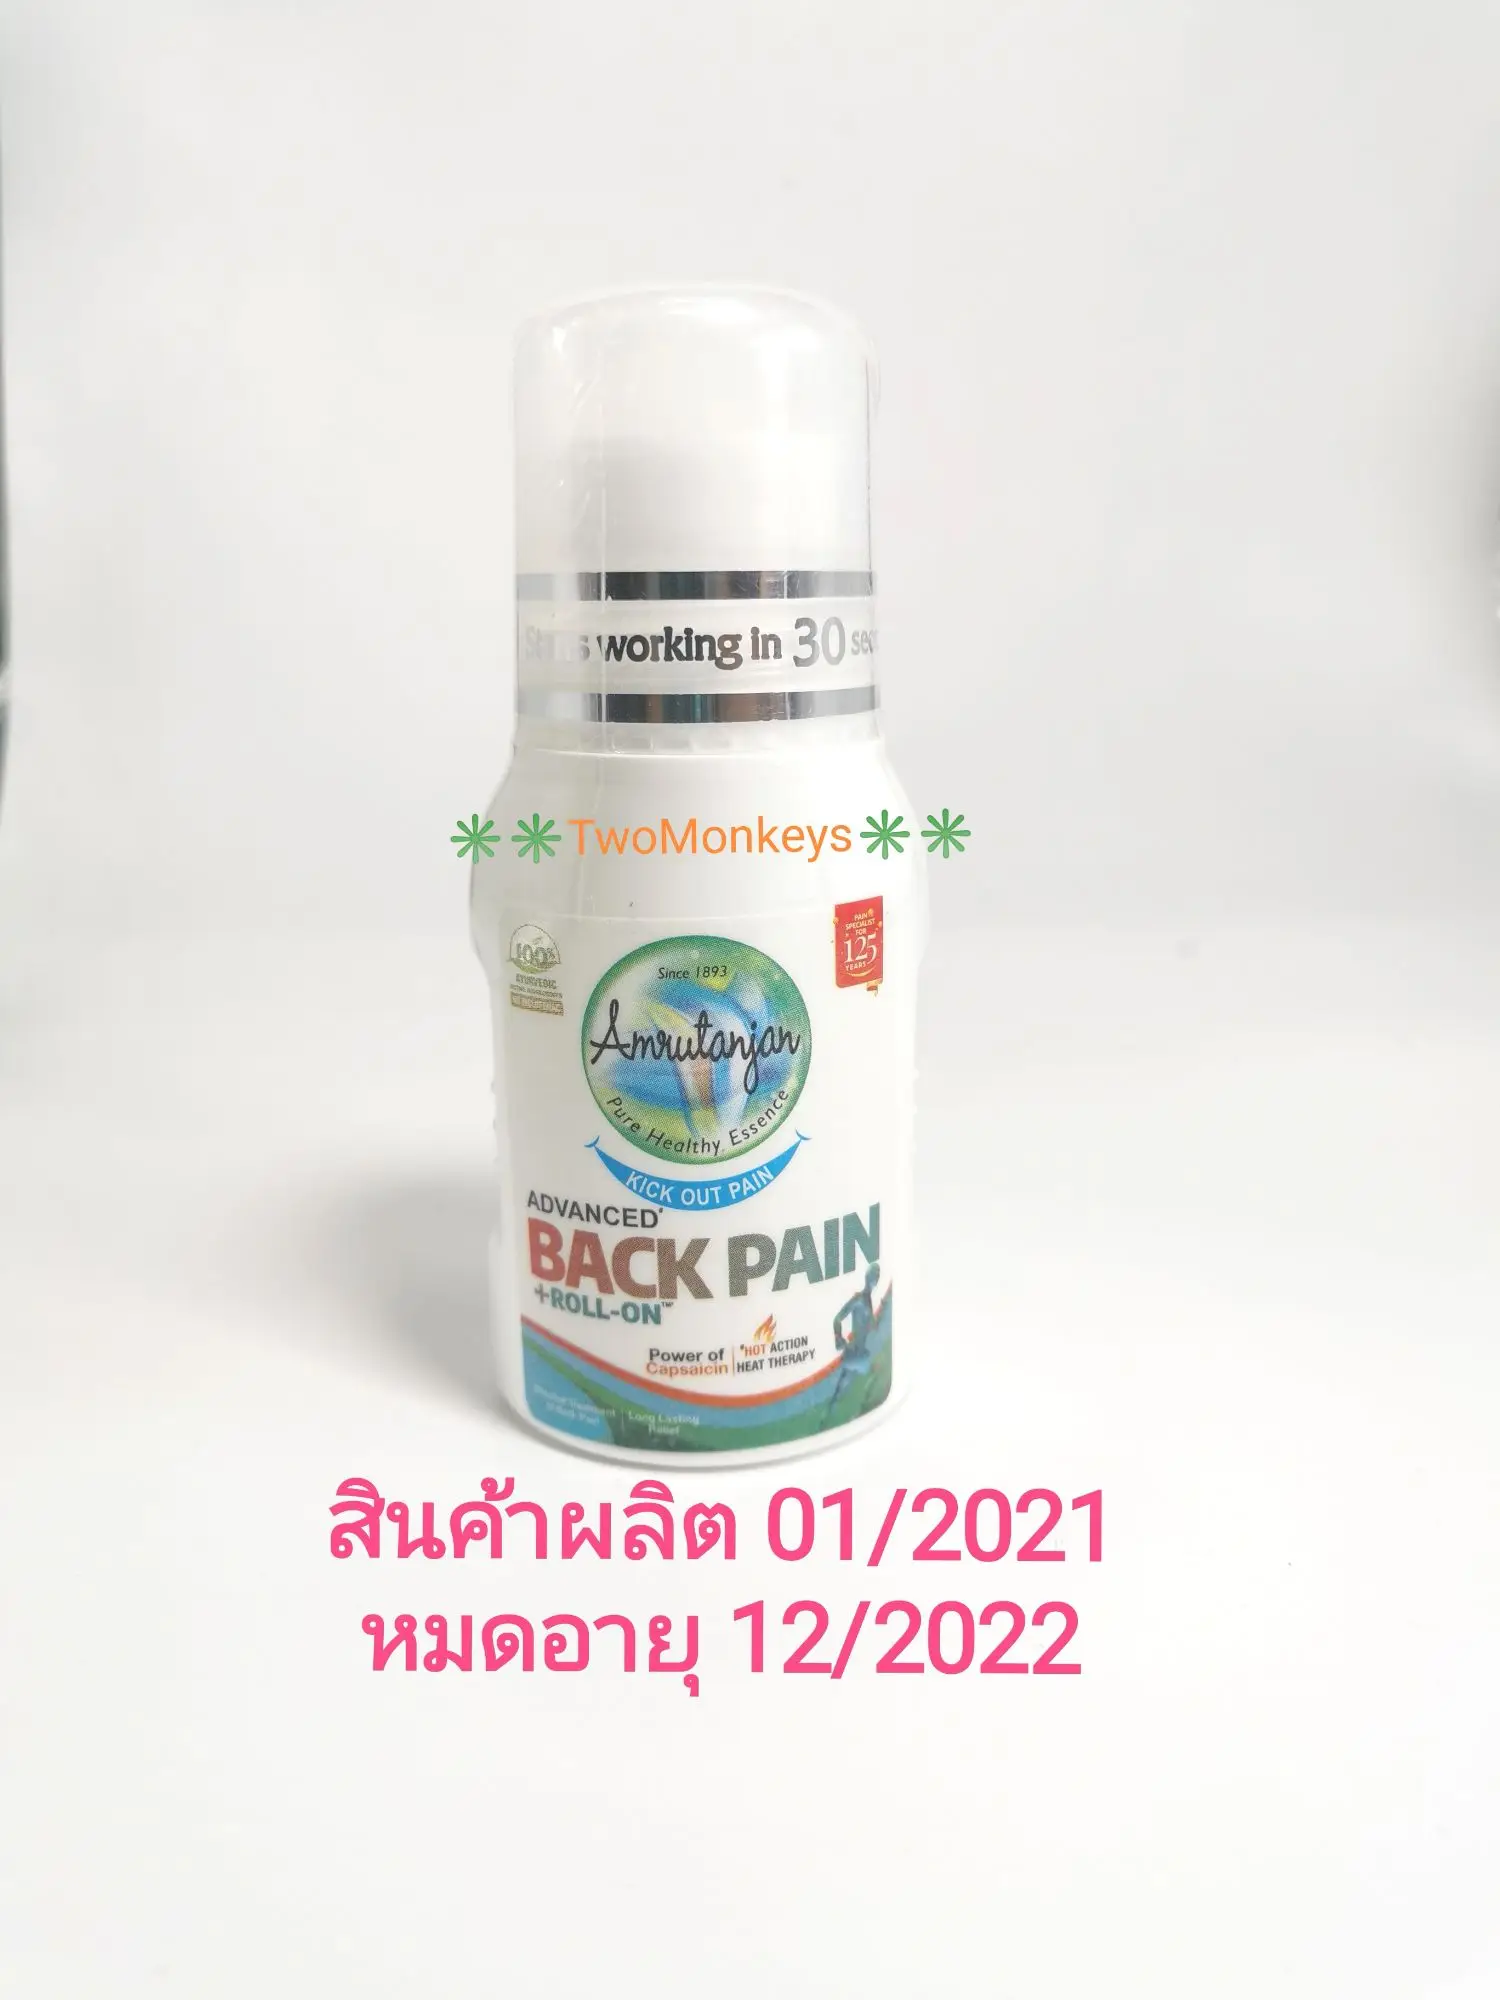 โรลออนแก้ปวดหลัง Amrutanjan Back Pain Roll On ขนาด 50ml.สินค้าผลิต01/2021หมดอายุ12/2022สินค้าพร้อมส่ง ราคาต่อ 1 ขวดนะคะ